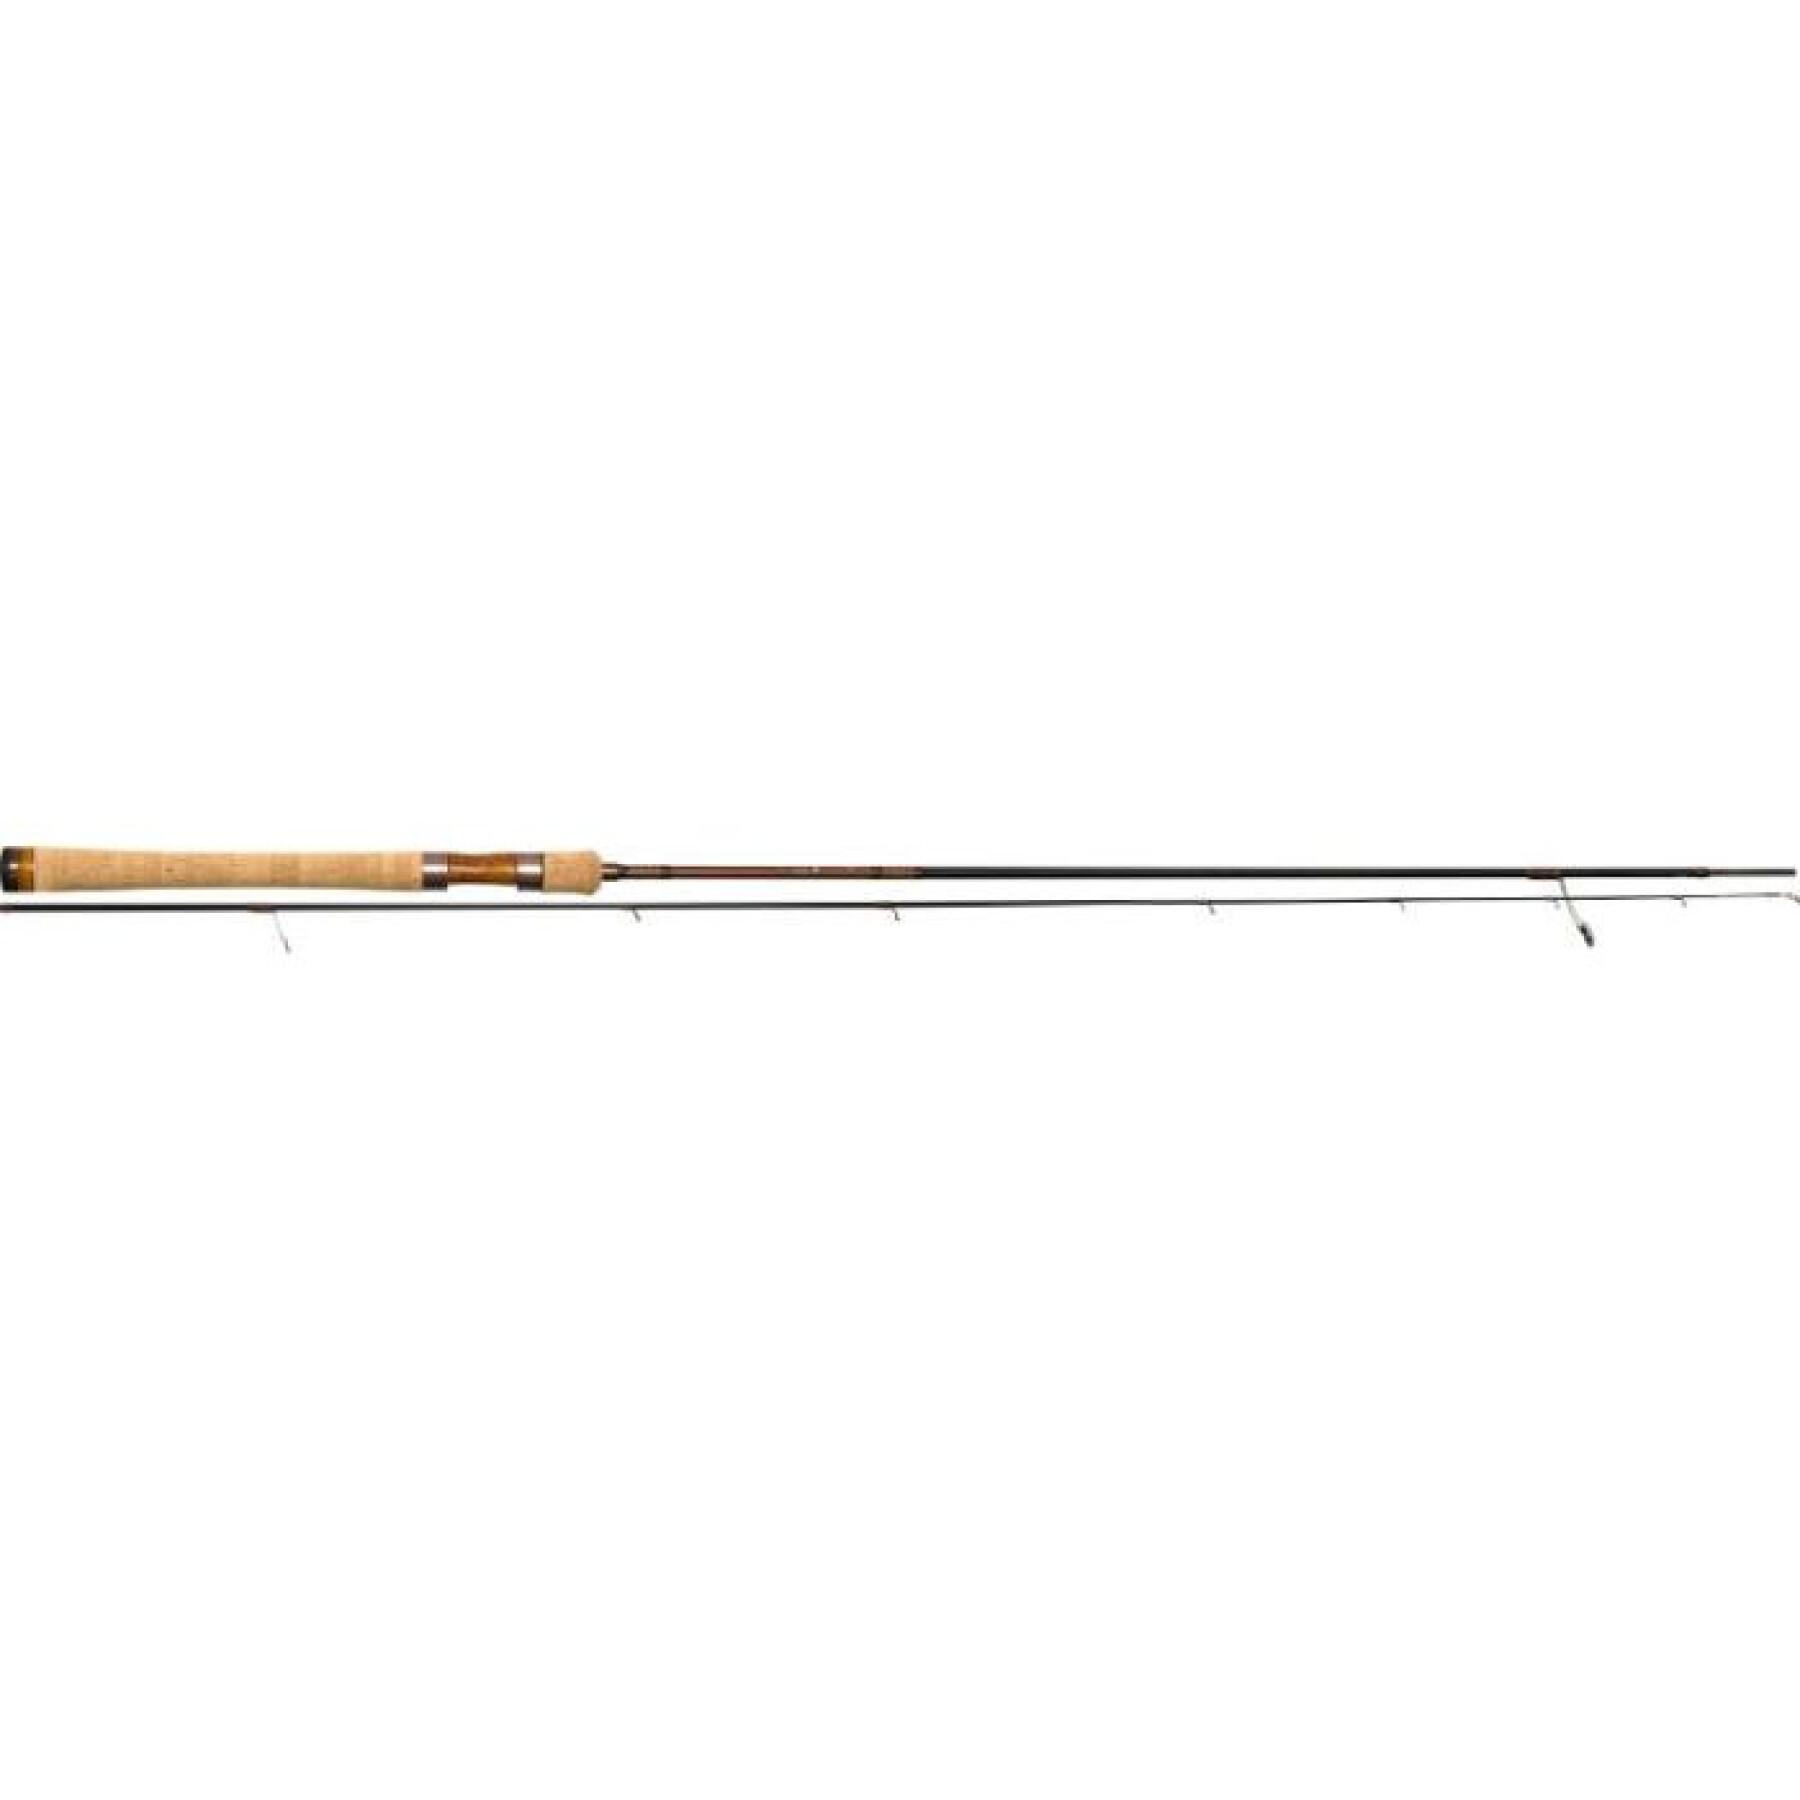 Cane spinning Ultimate Fishing Amago Evo 77 M 5-18g